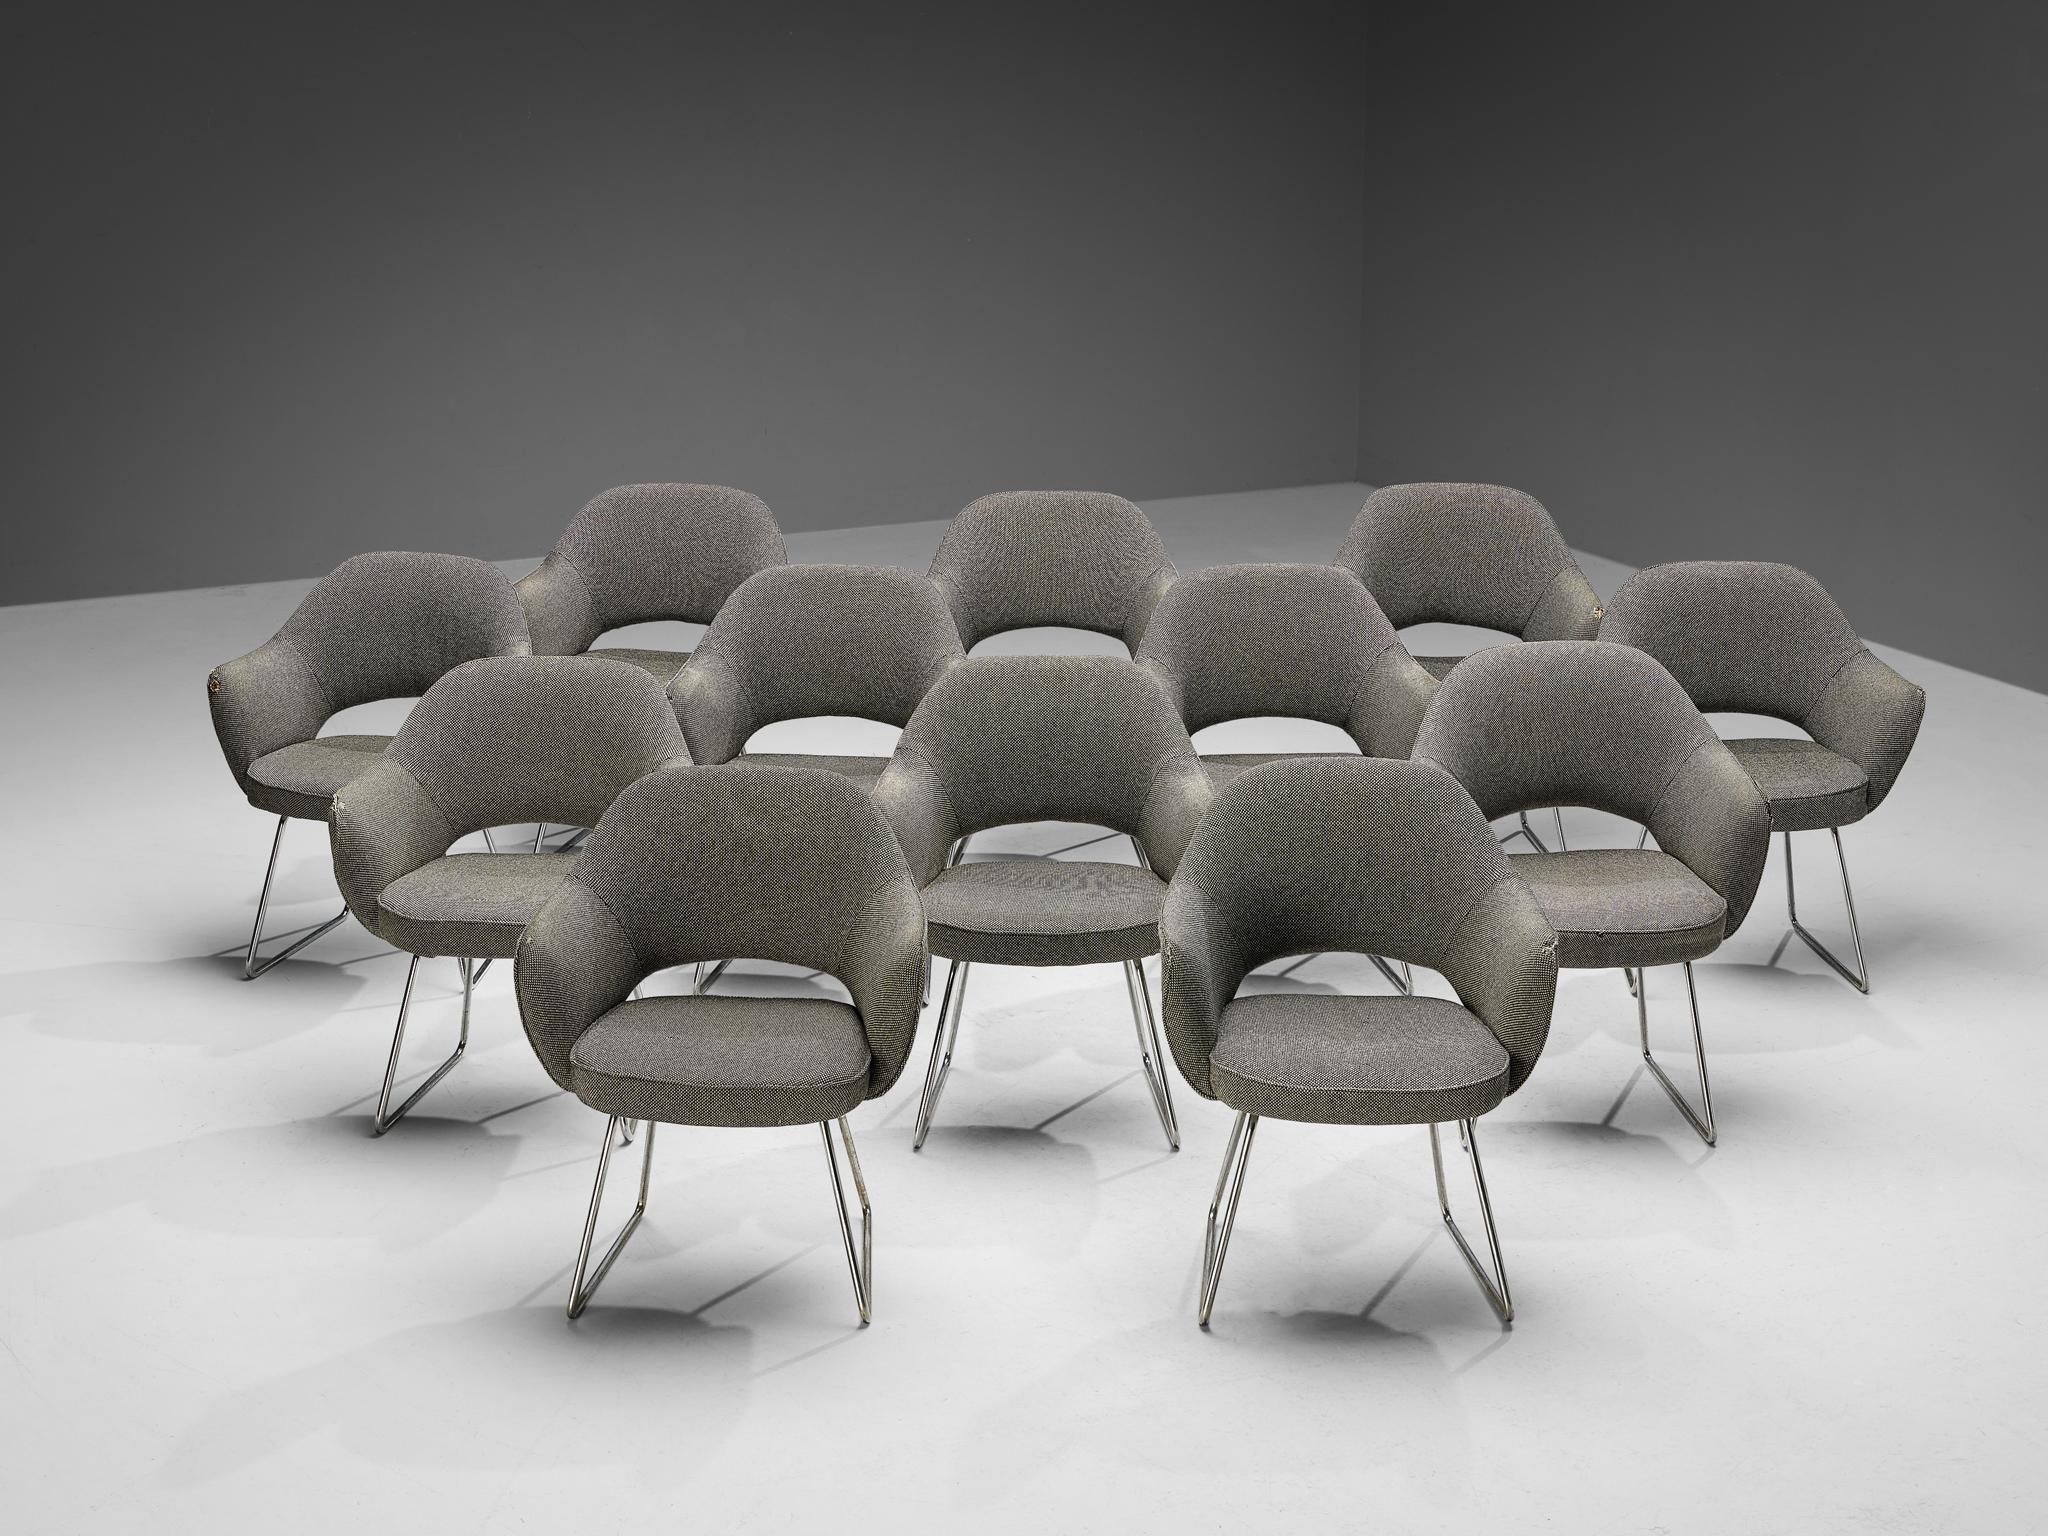 Eero Saarinen pour Knoll International, ensemble de douze fauteuils 'Conference', tissu original, métal chromé, France, Paris, conçu en 1957

Ce grand ensemble de fauteuils a été commandé par le siège de l'UNESCO situé à Paris. Ce bâtiment